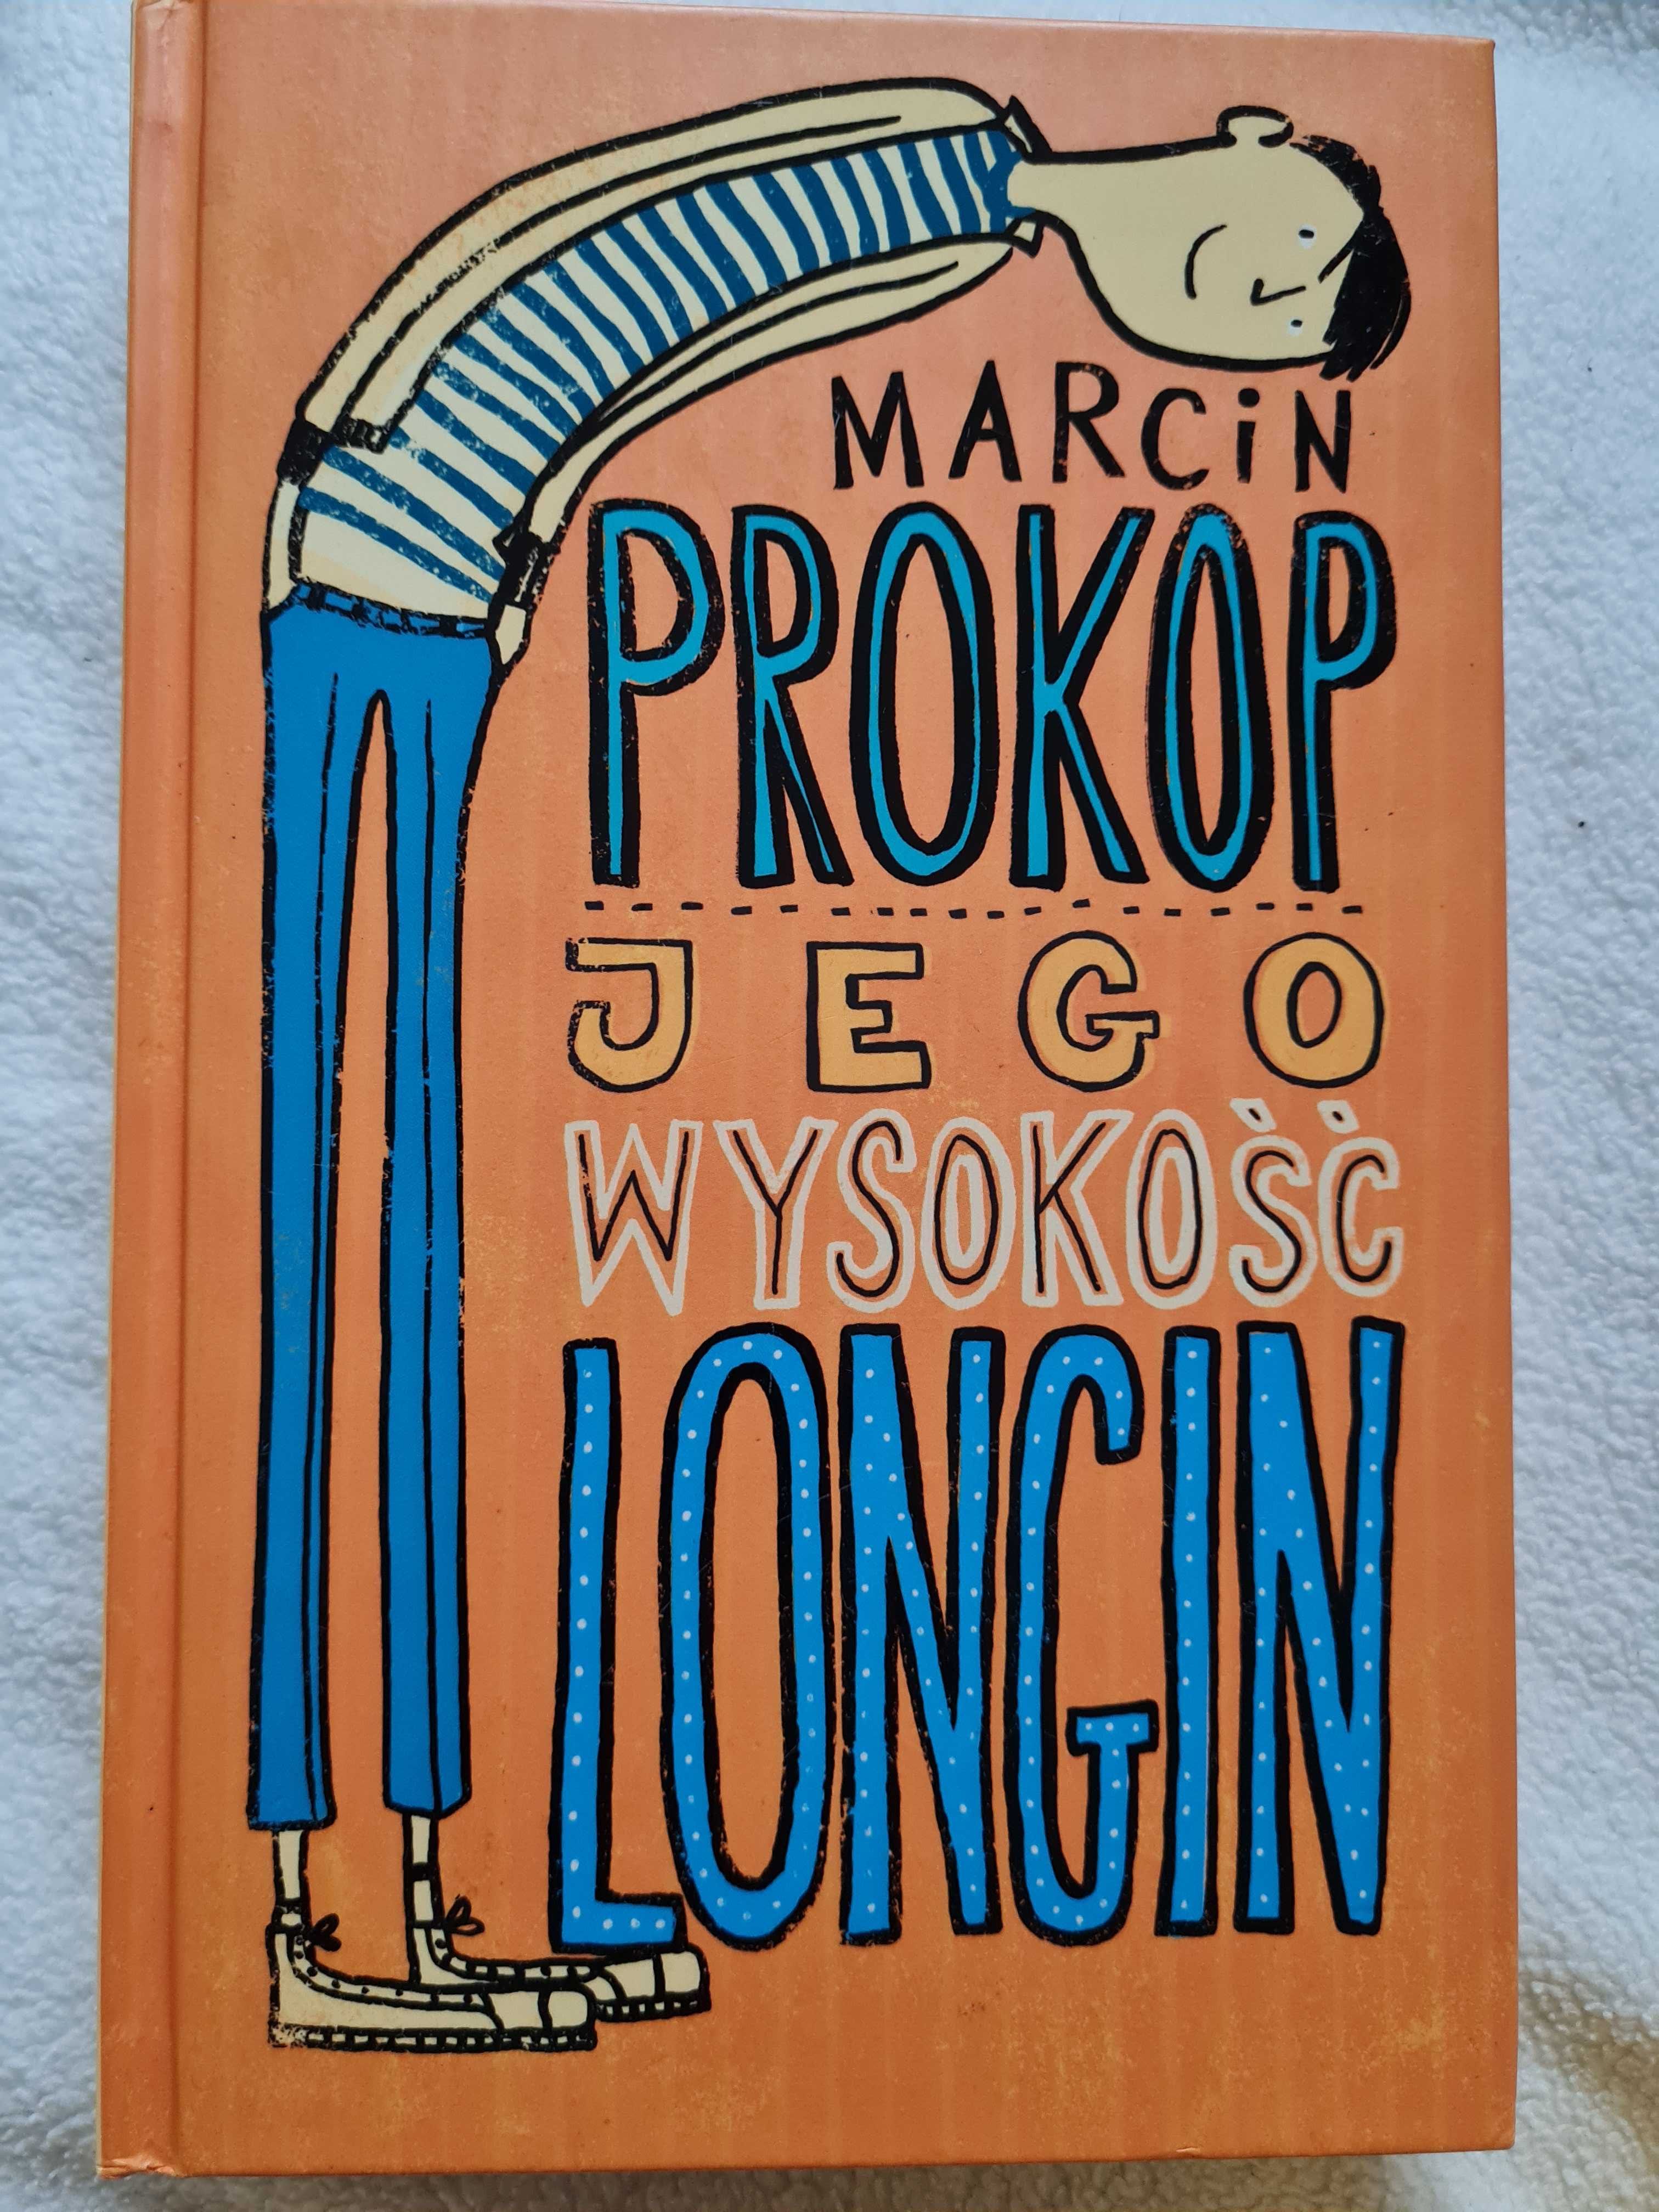 Książka "Jego wysokość Longin" Marcin Prokop